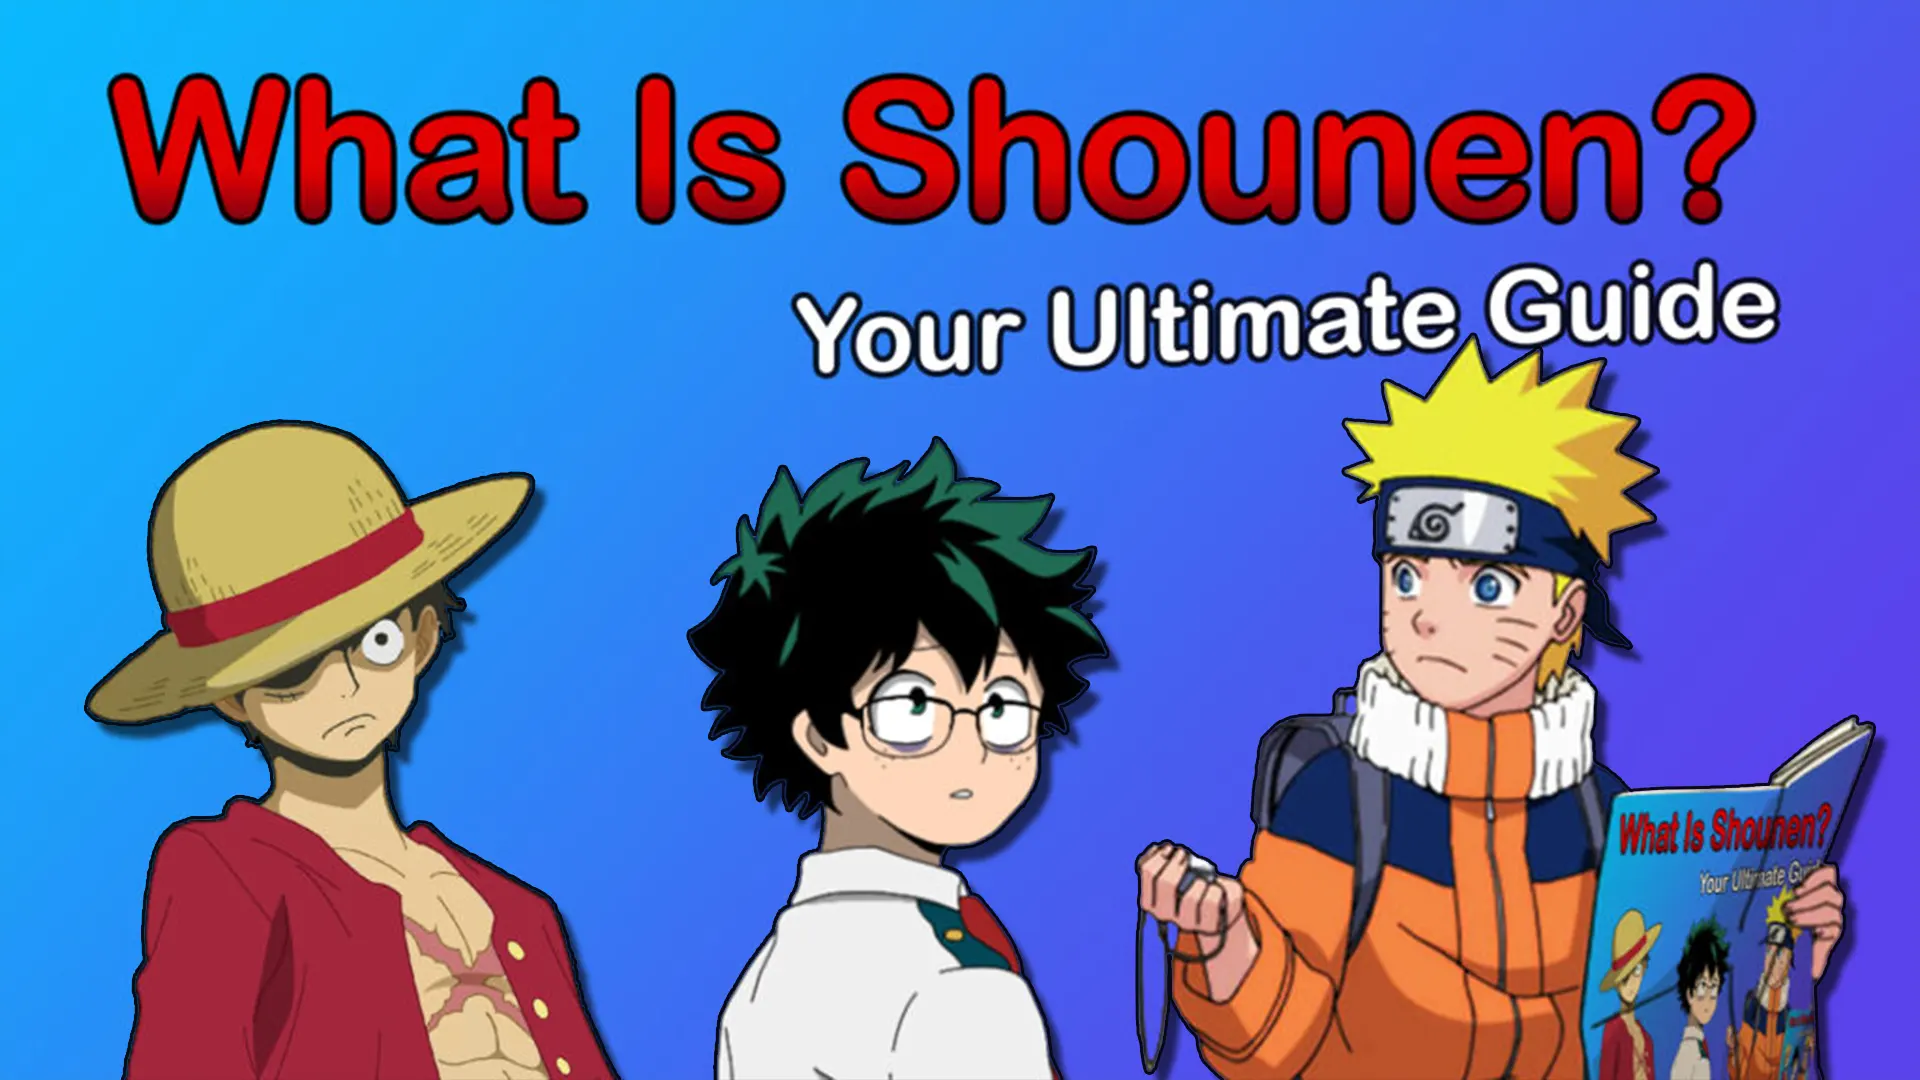 Shonen VS Seinen: Complete Difference (100% CLEAR) | AnimeTel